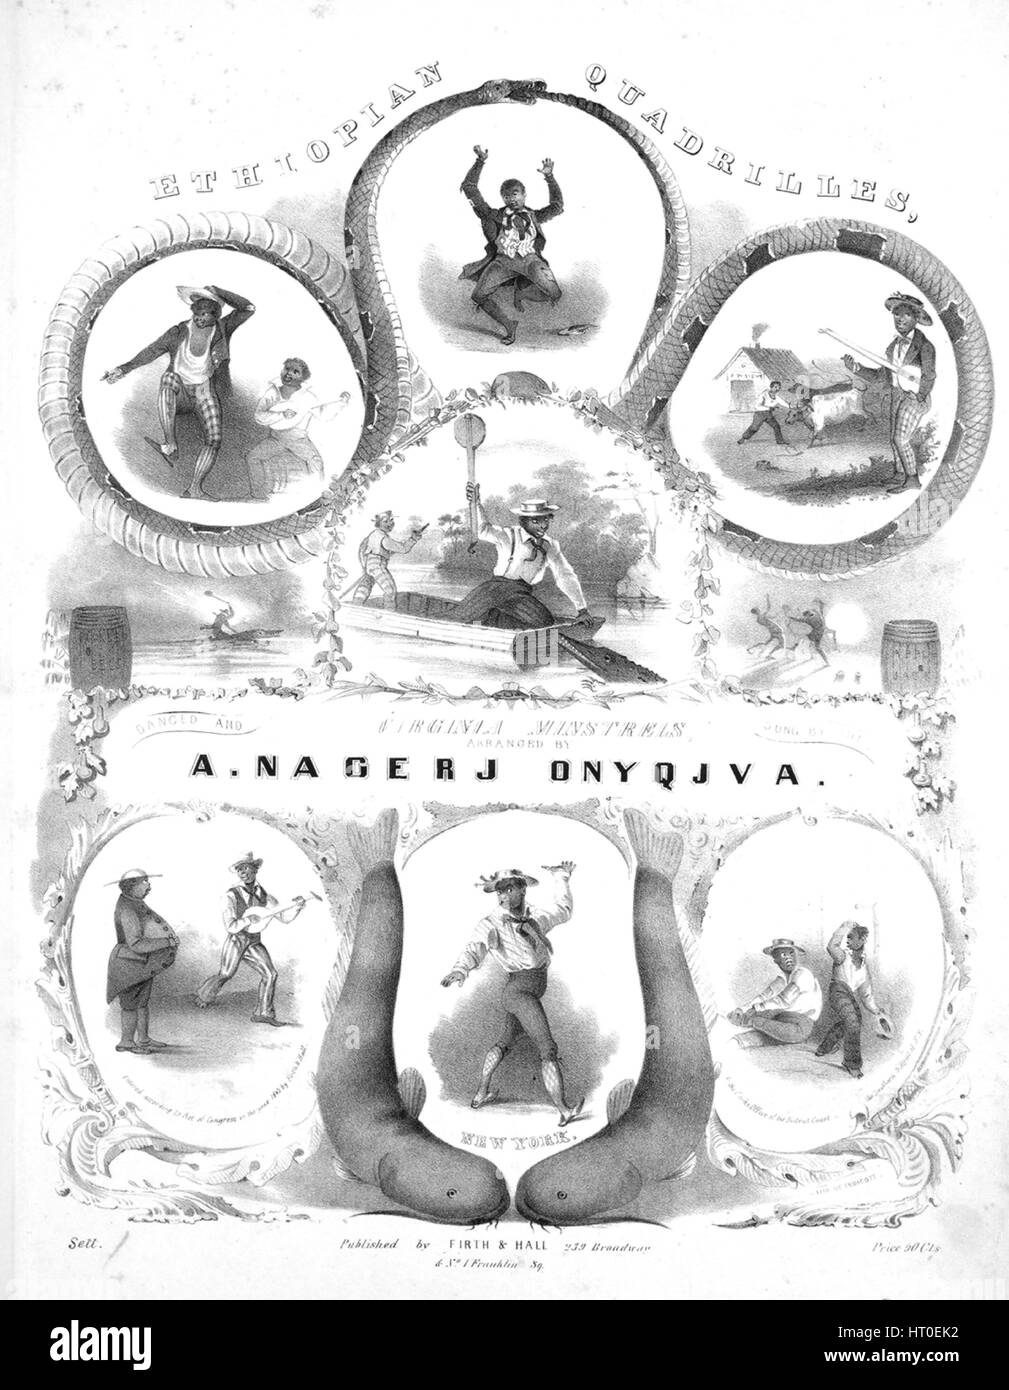 Sheet Music image de couverture de la chanson 'Quadrilles éthiopien (1) Goin Ober De Mountin ; (2) Jonny Boker ; (3) de vieux os de la mâchoire ; (4) Jumbo Jum ; (5) Jim le long de Josey', avec 'Lecture notes auteur original composé par un Nagerj Onyqjva', United States, 1843. L'éditeur est répertorié comme 'Firth et Hall, 239 Broadway', la forme de composition est 'sectional', l'instrumentation est 'piano', la première ligne se lit 'Aucun', et l'illustration artiste est répertorié comme 'Sett. ; Lith. d'Endicott'. Banque D'Images